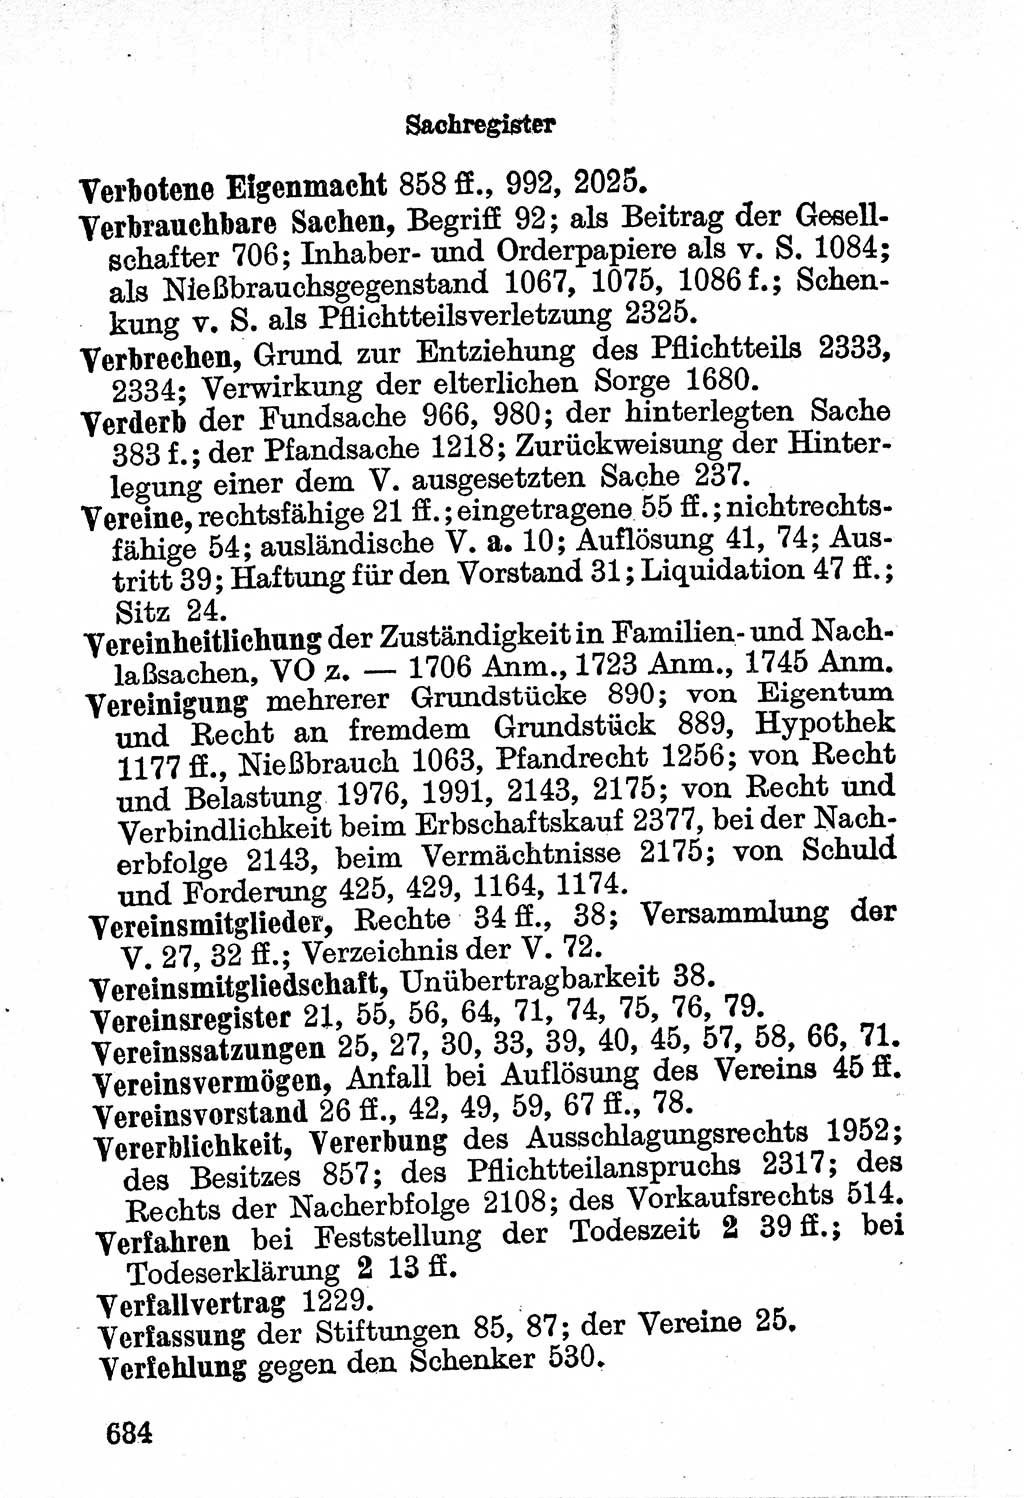 Bürgerliches Gesetzbuch (BGB) nebst wichtigen Nebengesetzen [Deutsche Demokratische Republik (DDR)] 1956, Seite 684 (BGB Nebenges. DDR 1956, S. 684)